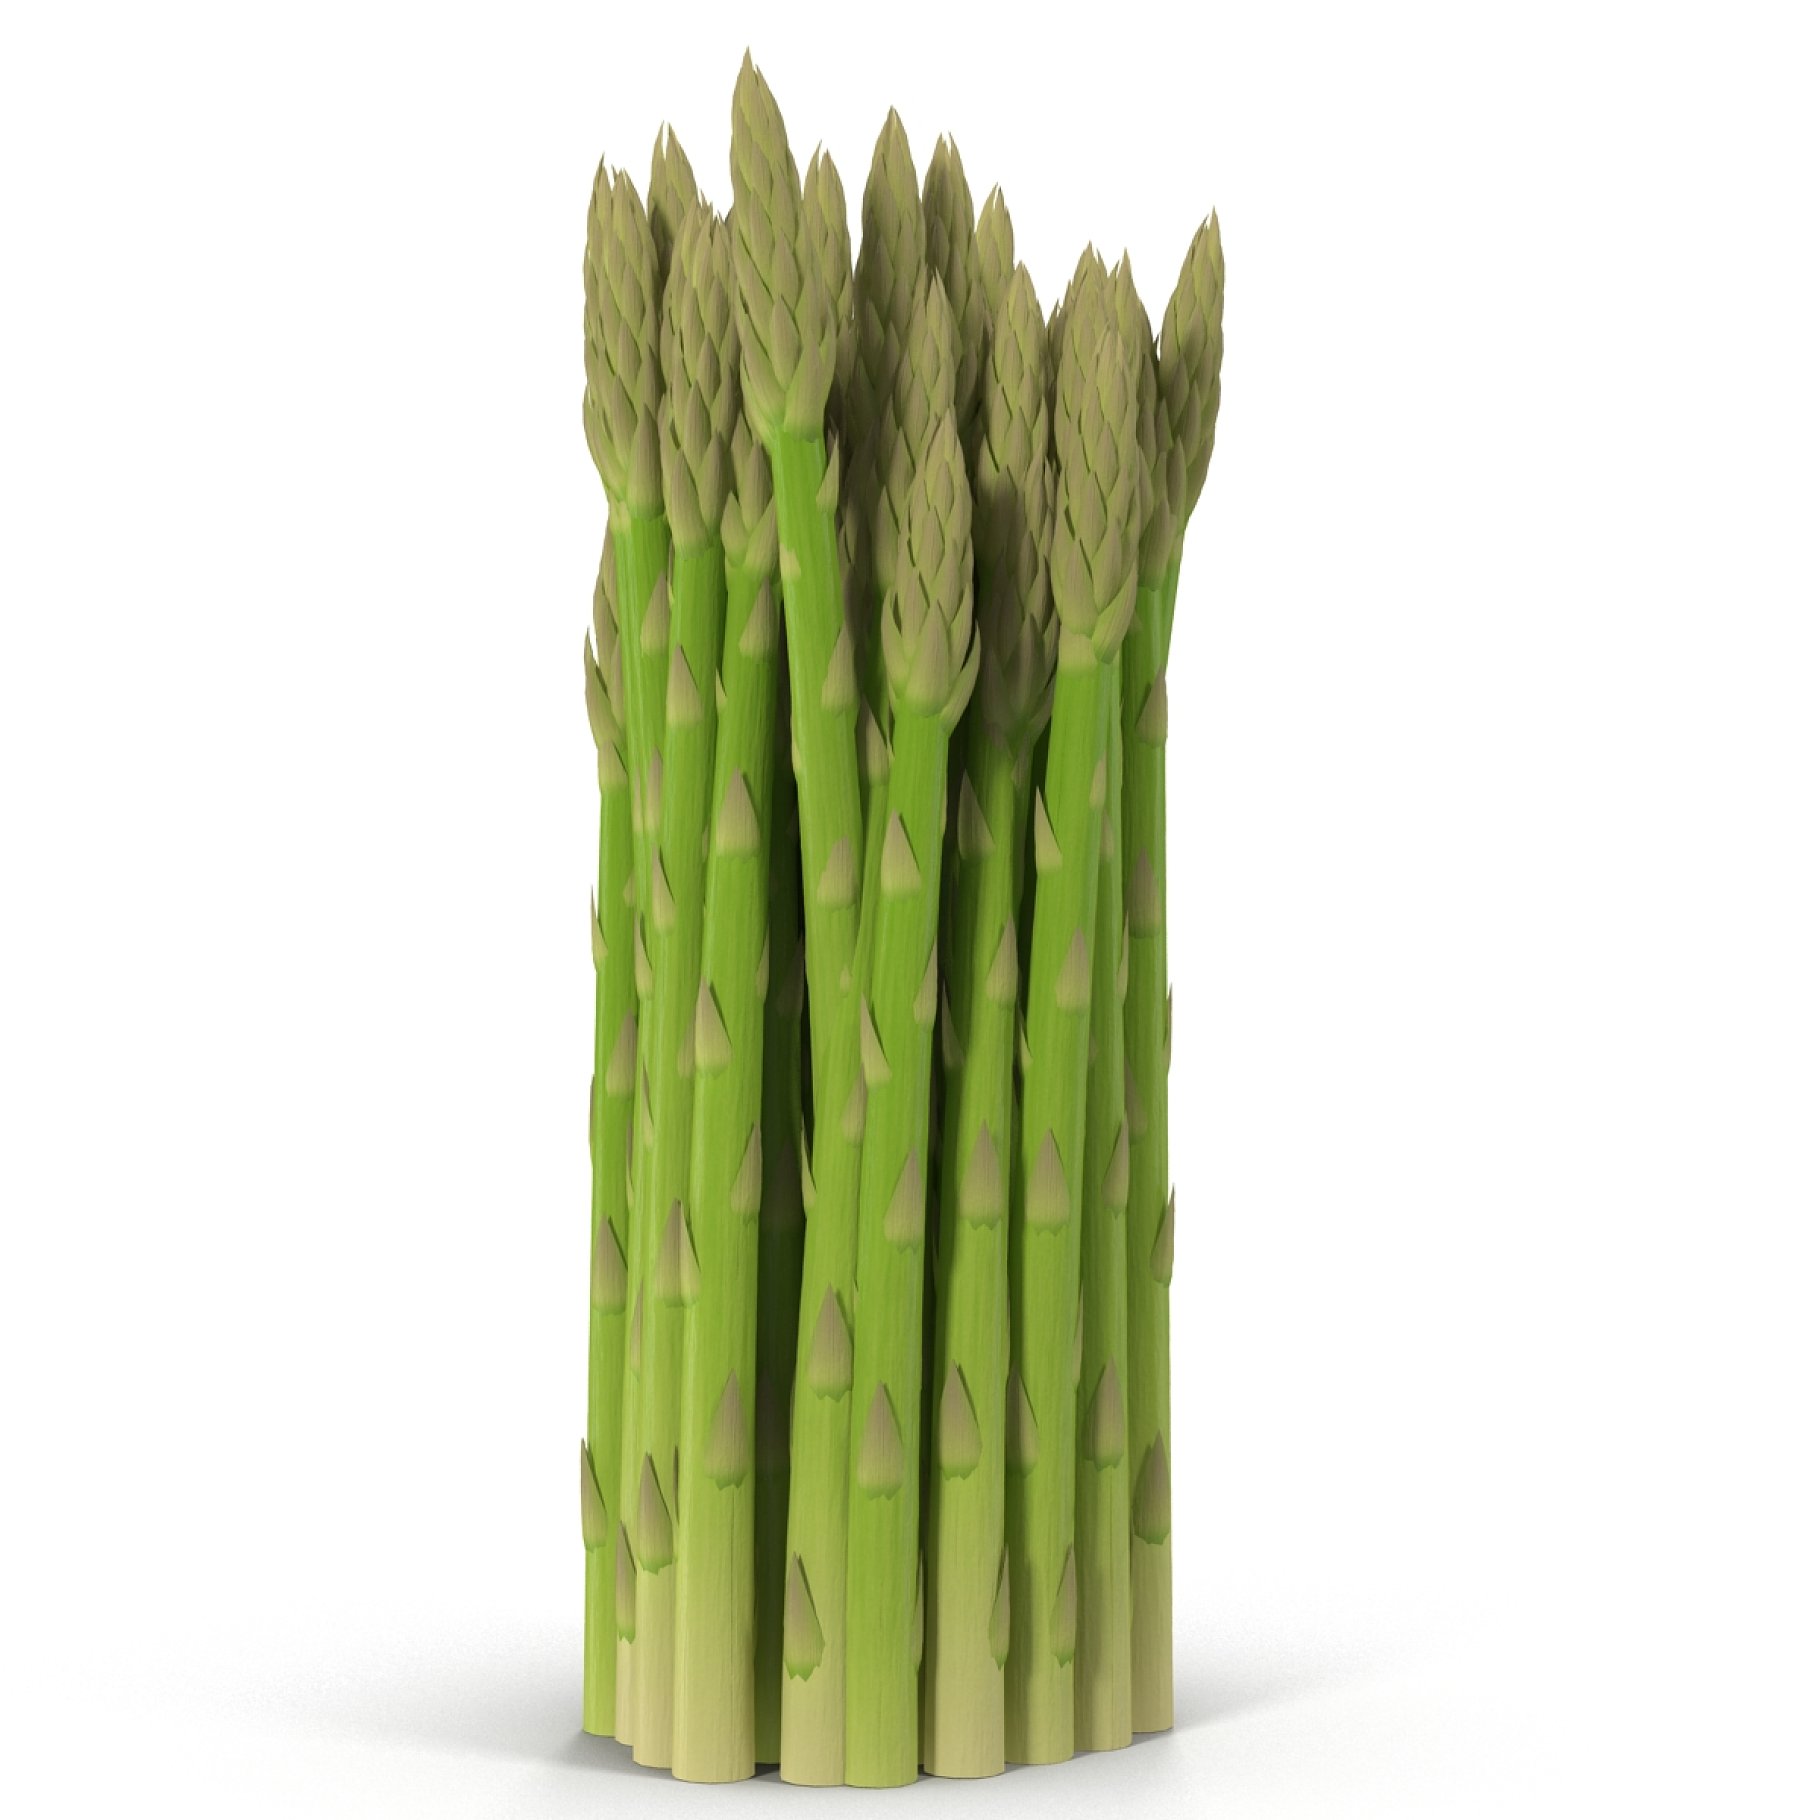 Green asparagus.